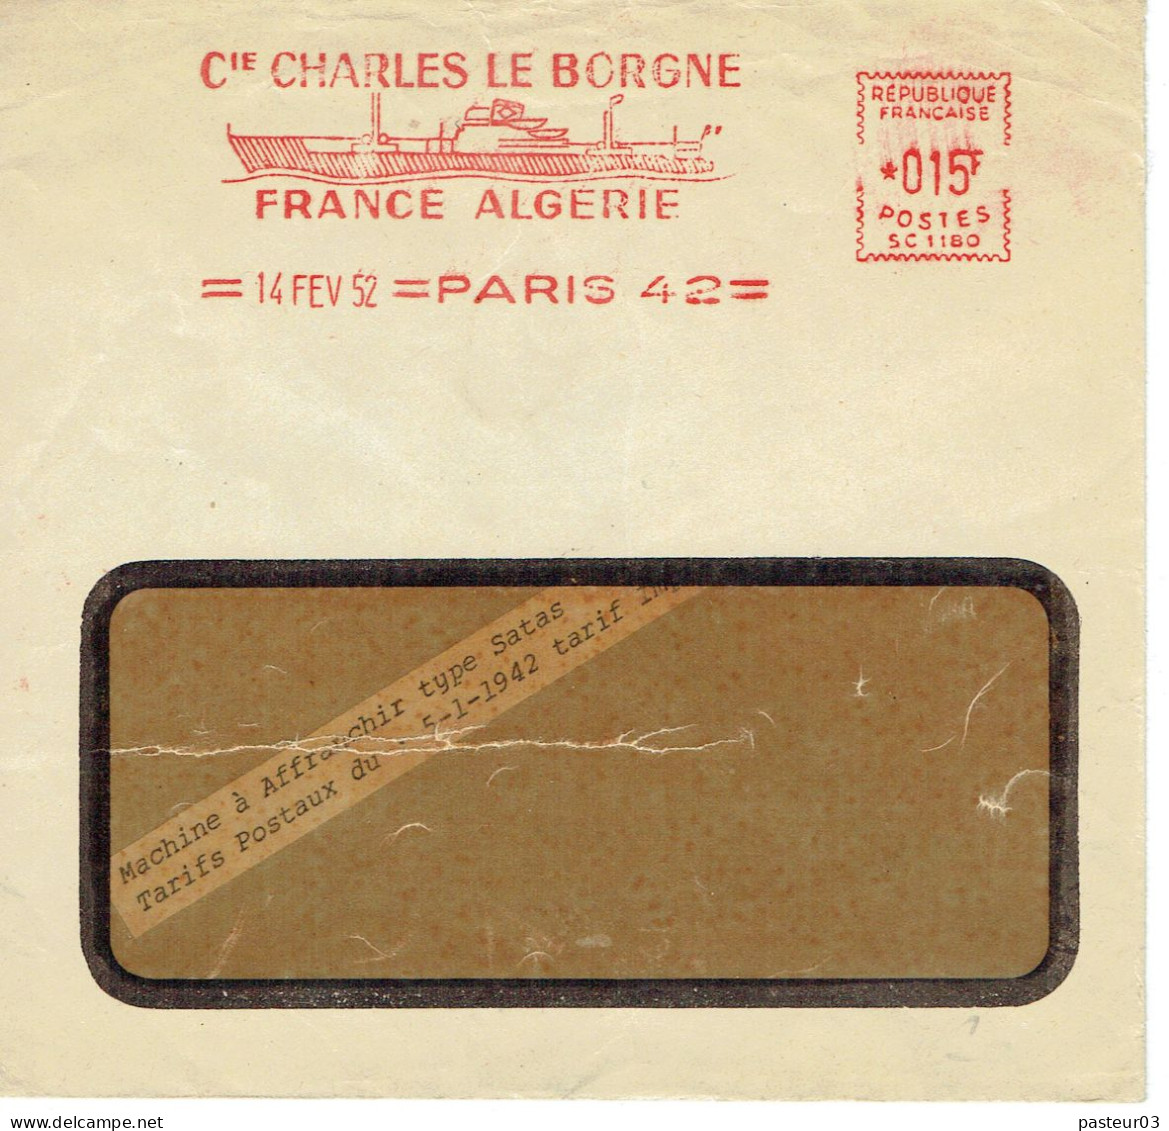 Compagnie Charles Le Borgne France Algérie Paris 14 Février 1952 - EMA (Print Machine)